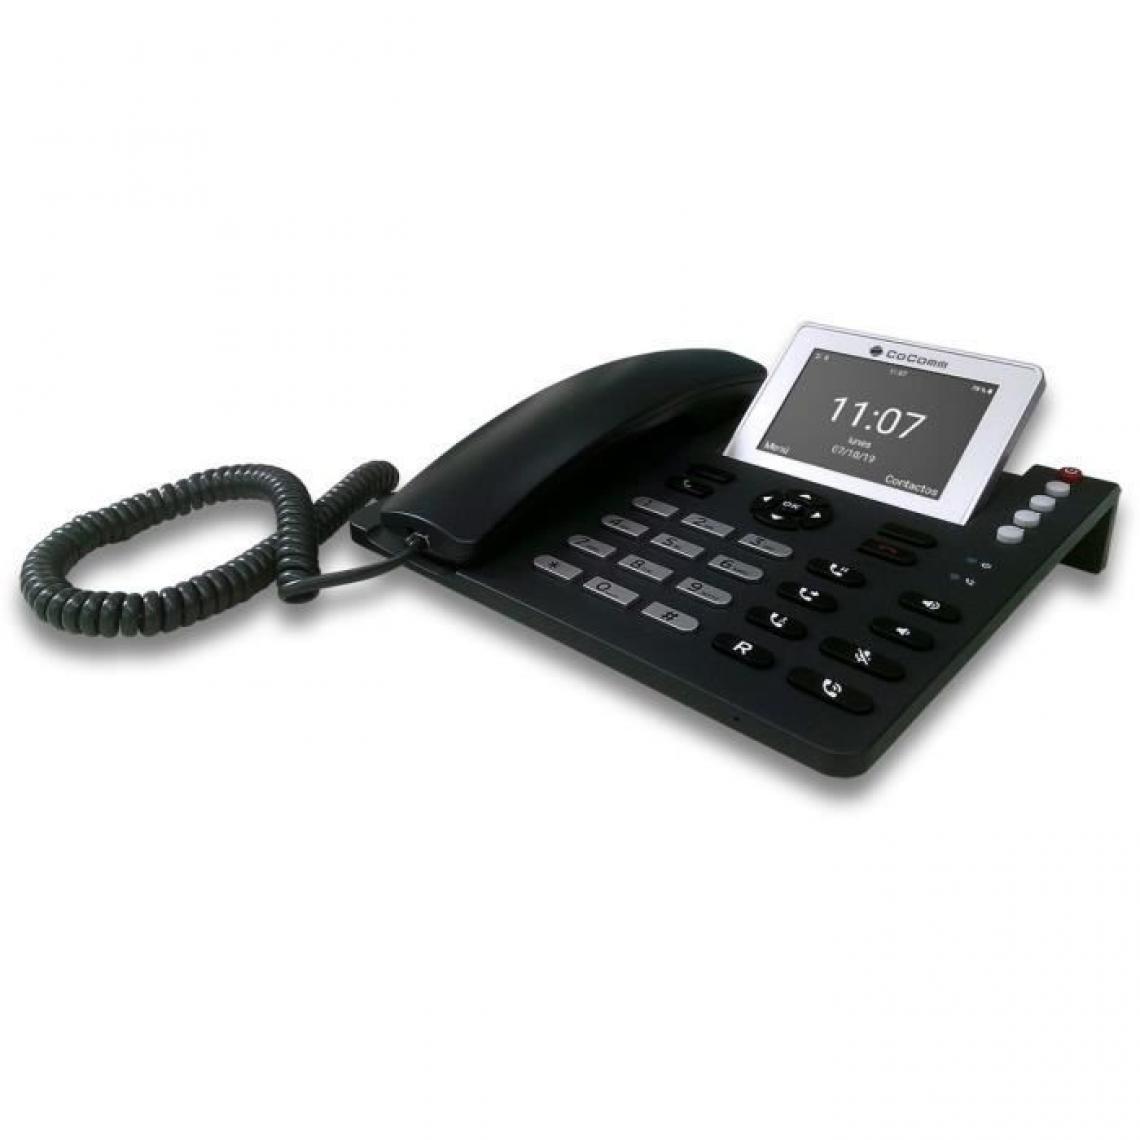 CoComm - Cocomm F740 Téléphone Filaire 4G - Noir - Téléphone fixe filaire